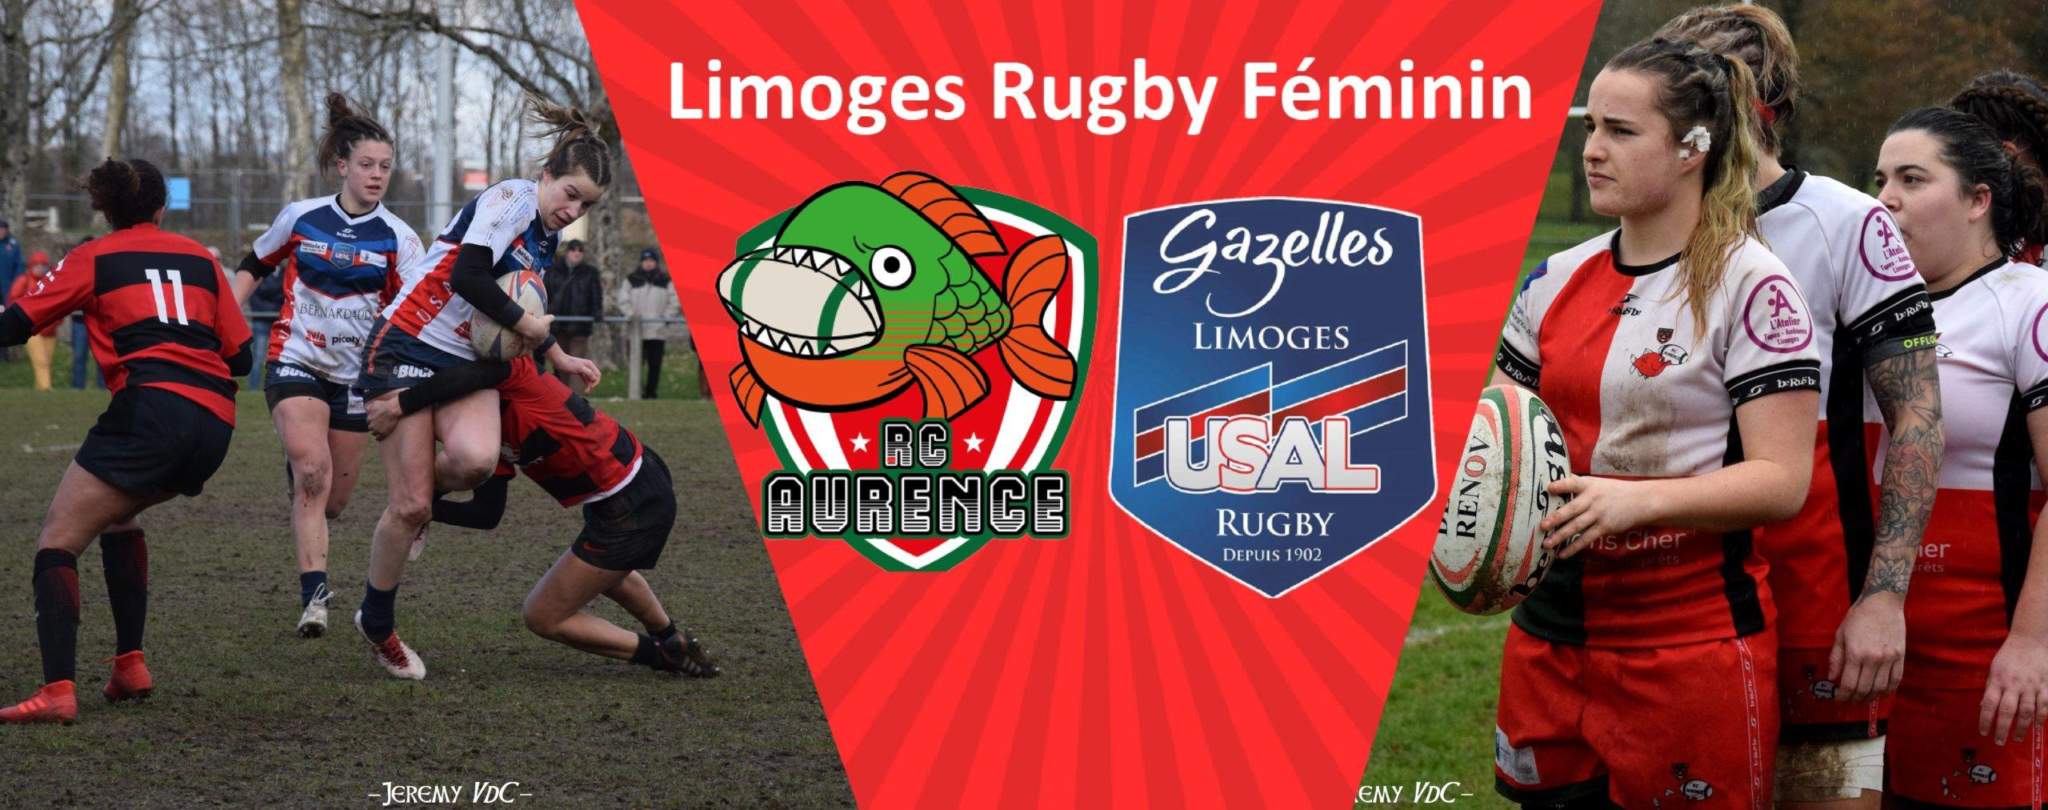 Deux clubs, mais un rassemblement qui regarde vers le même avenir : celui du rugby féminin à Limoges (montage RA, crédits photo Jeremy VdC et LRF)